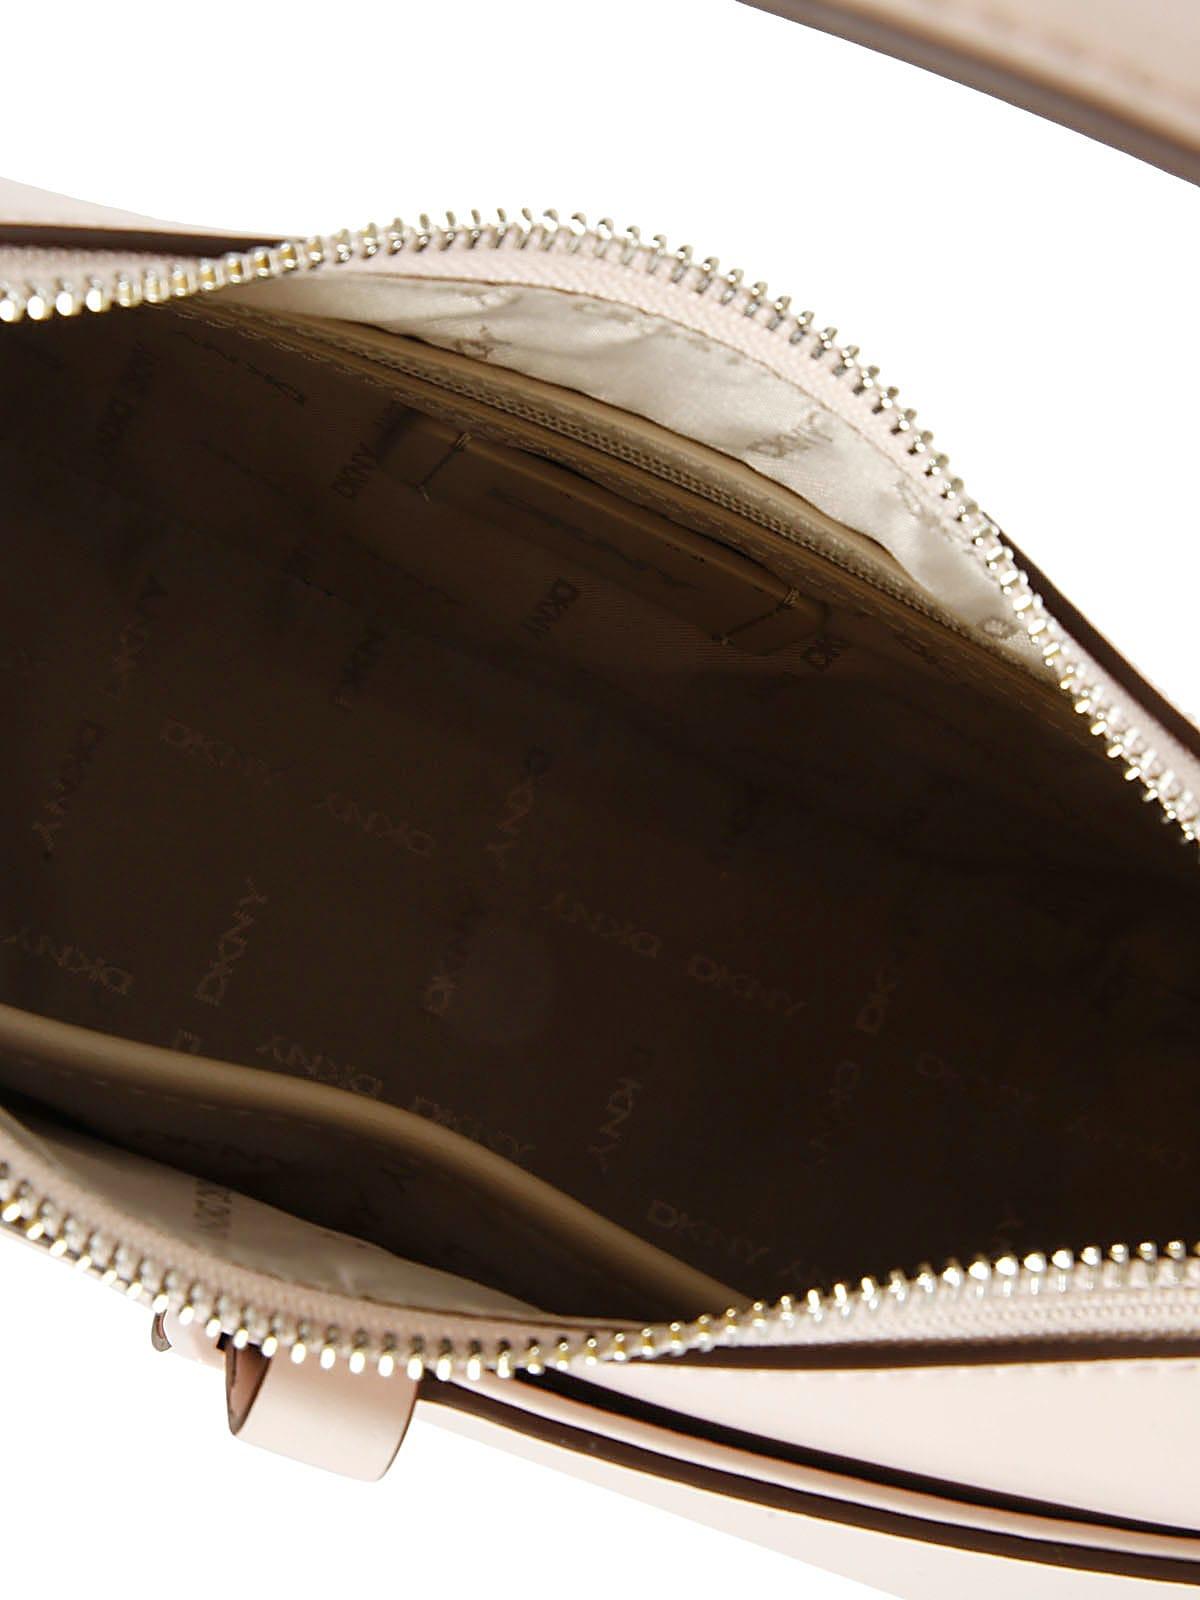 DKNY Seth Vegan Leather Shoulder Bag